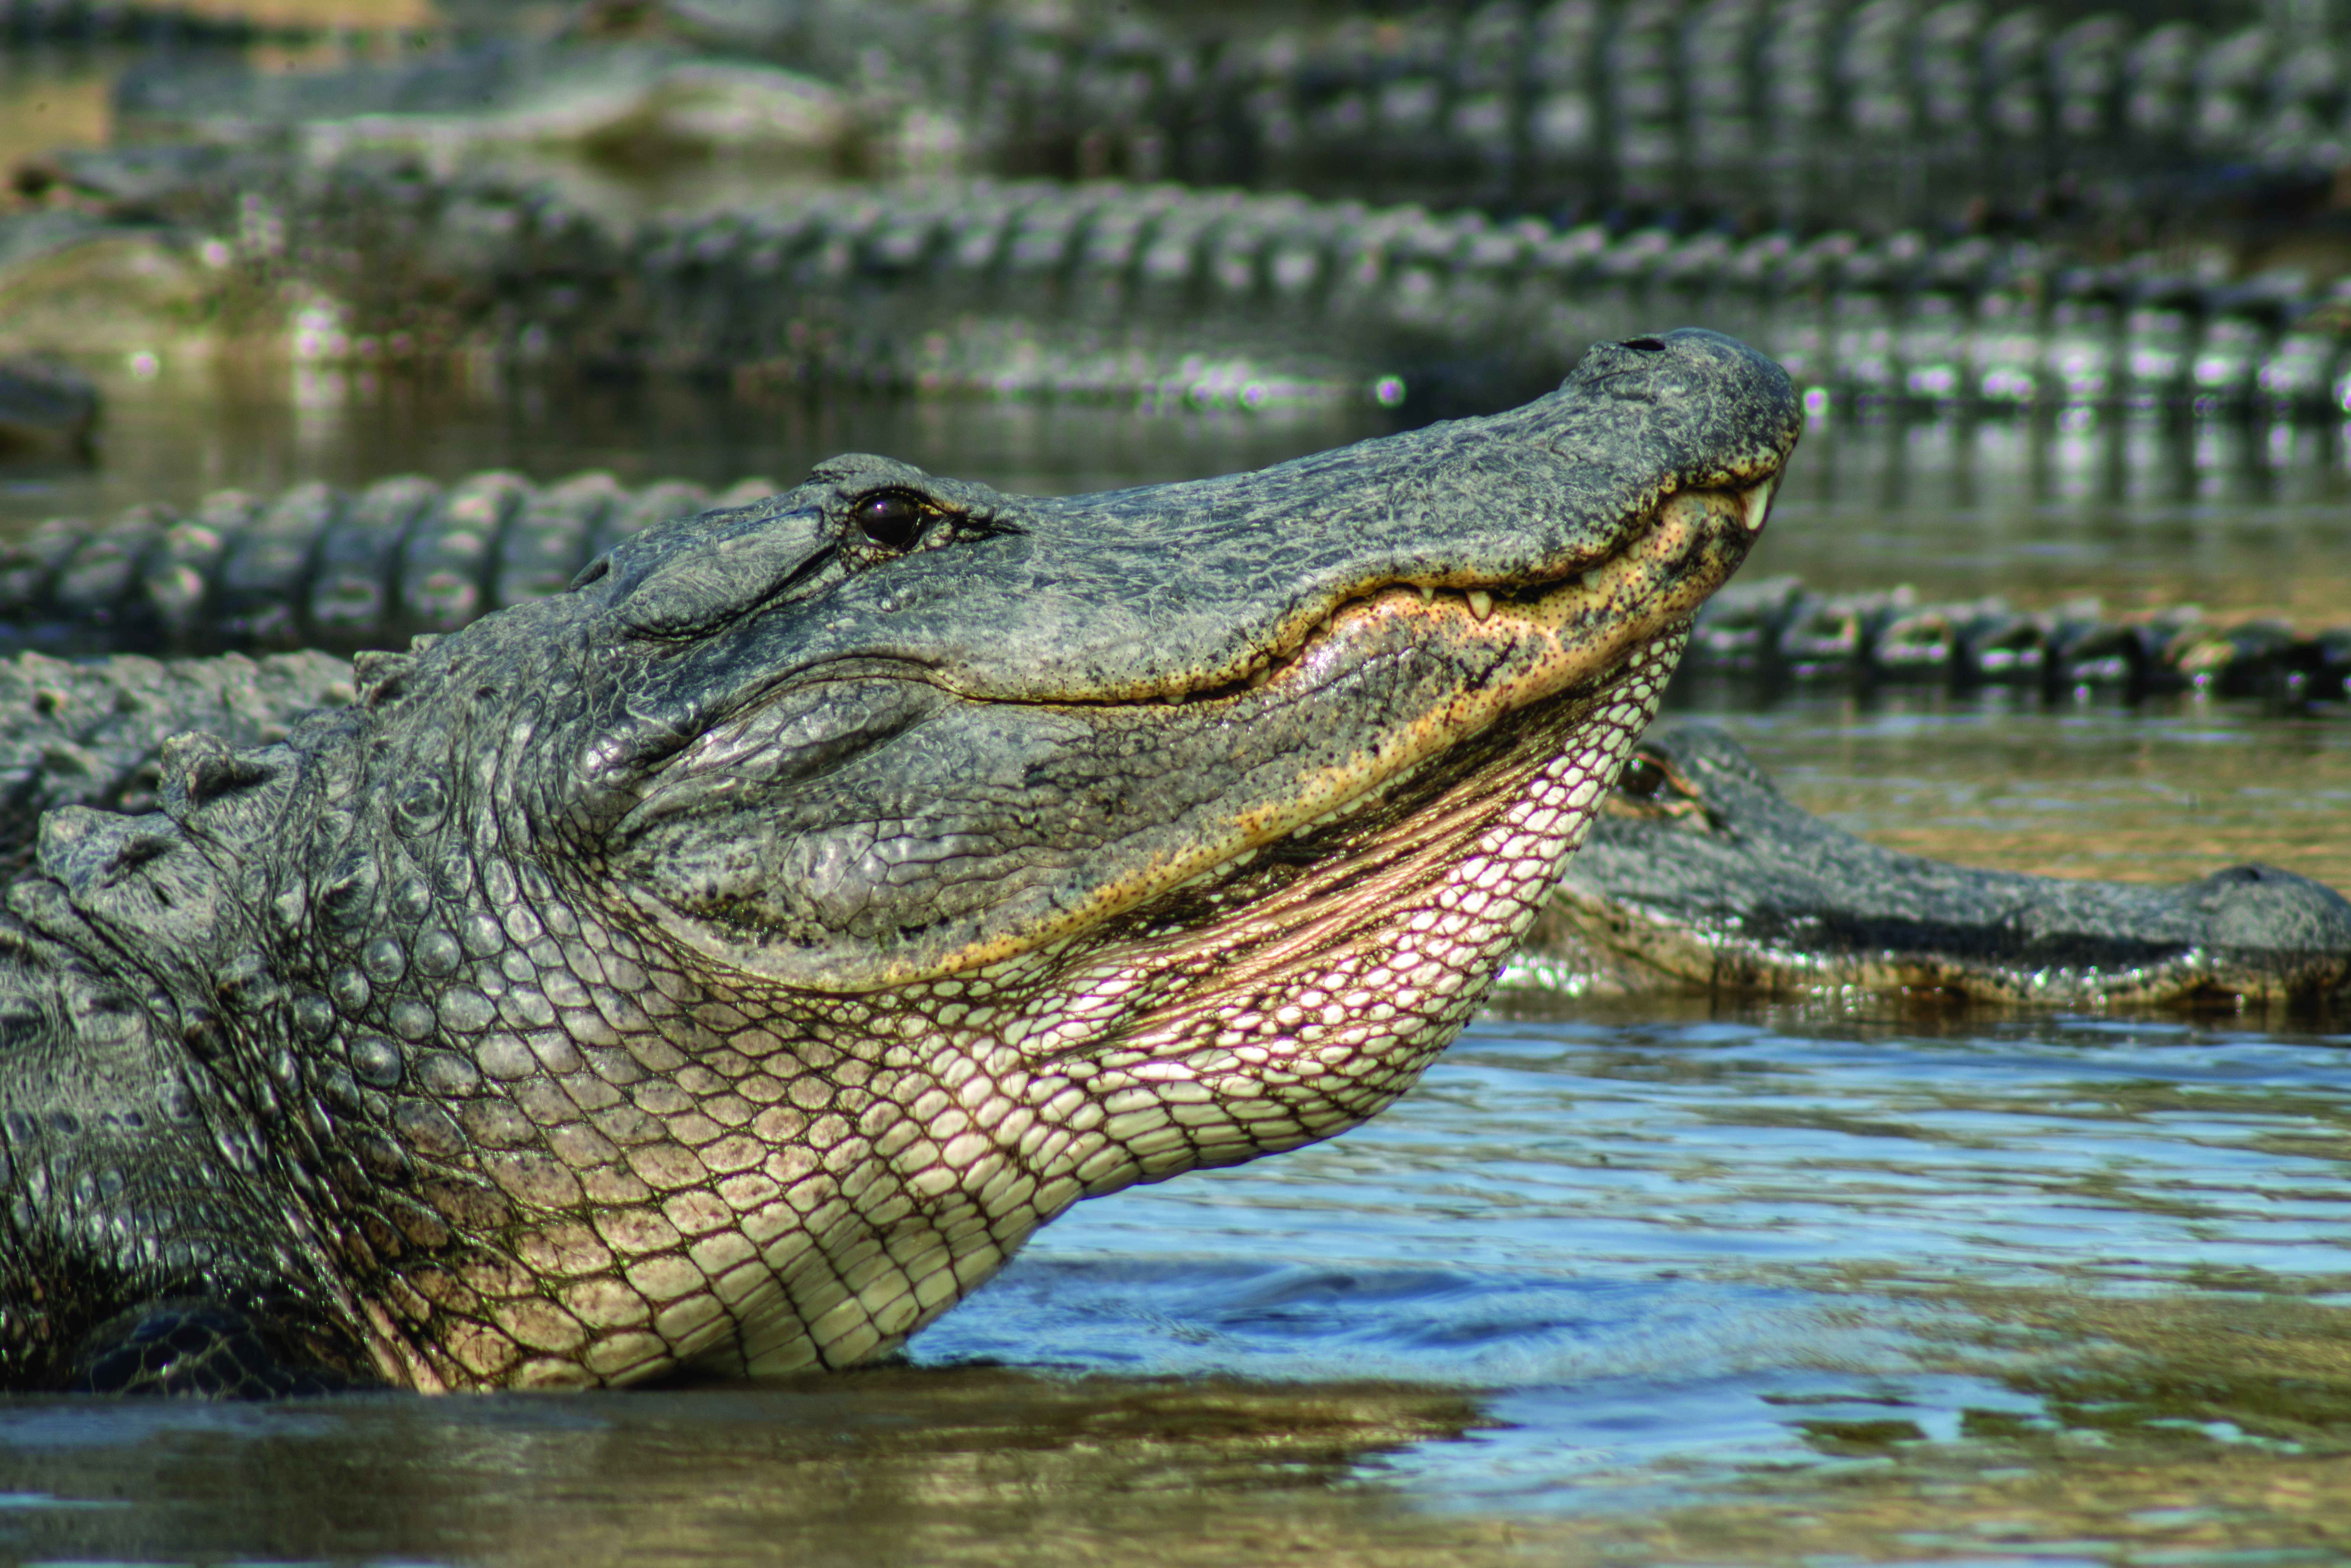 Alligator on River Bank